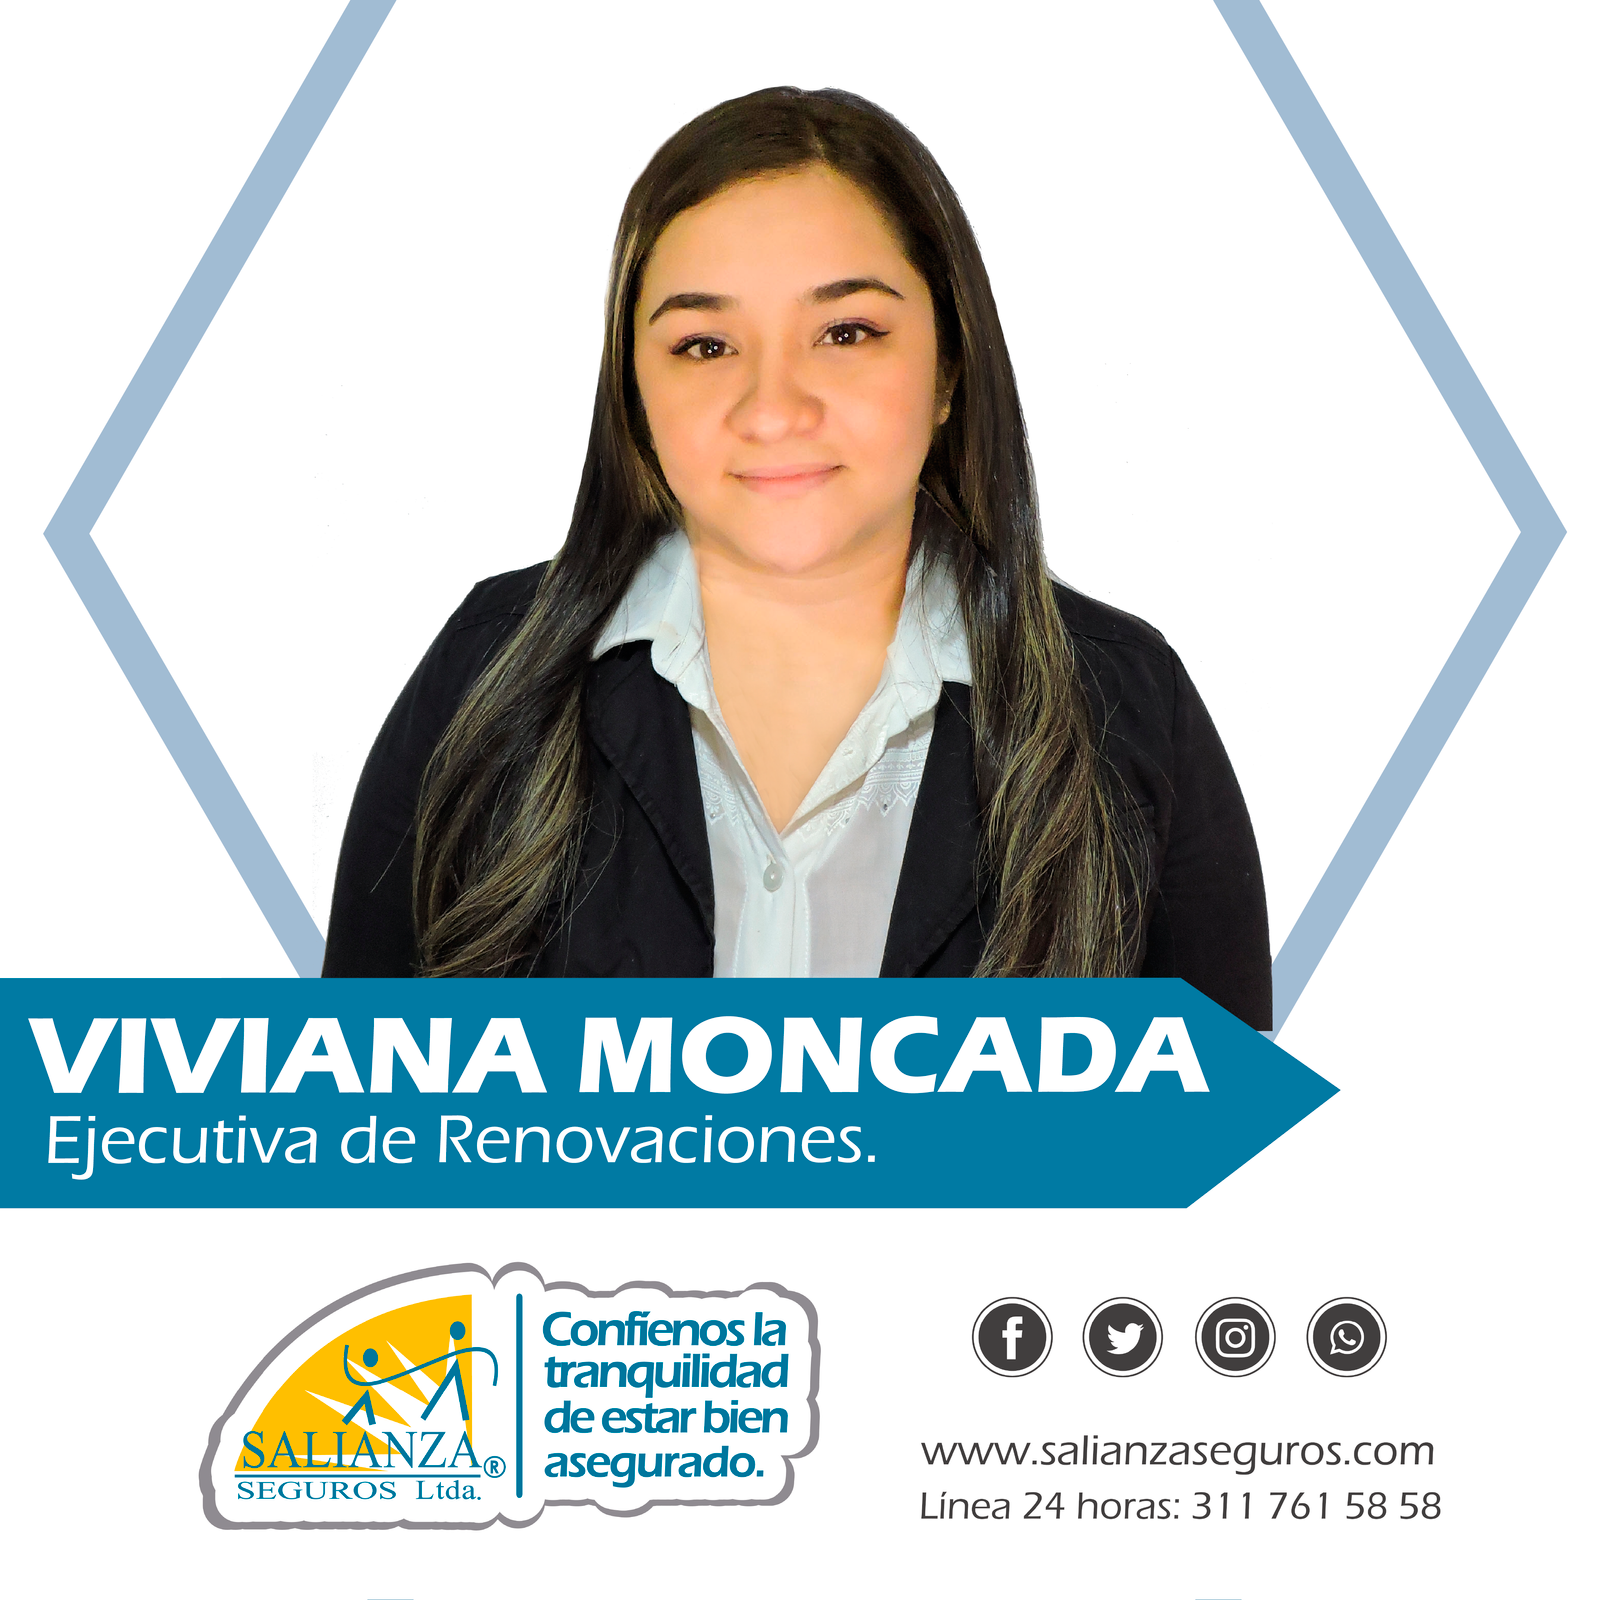 Viviana Moncada